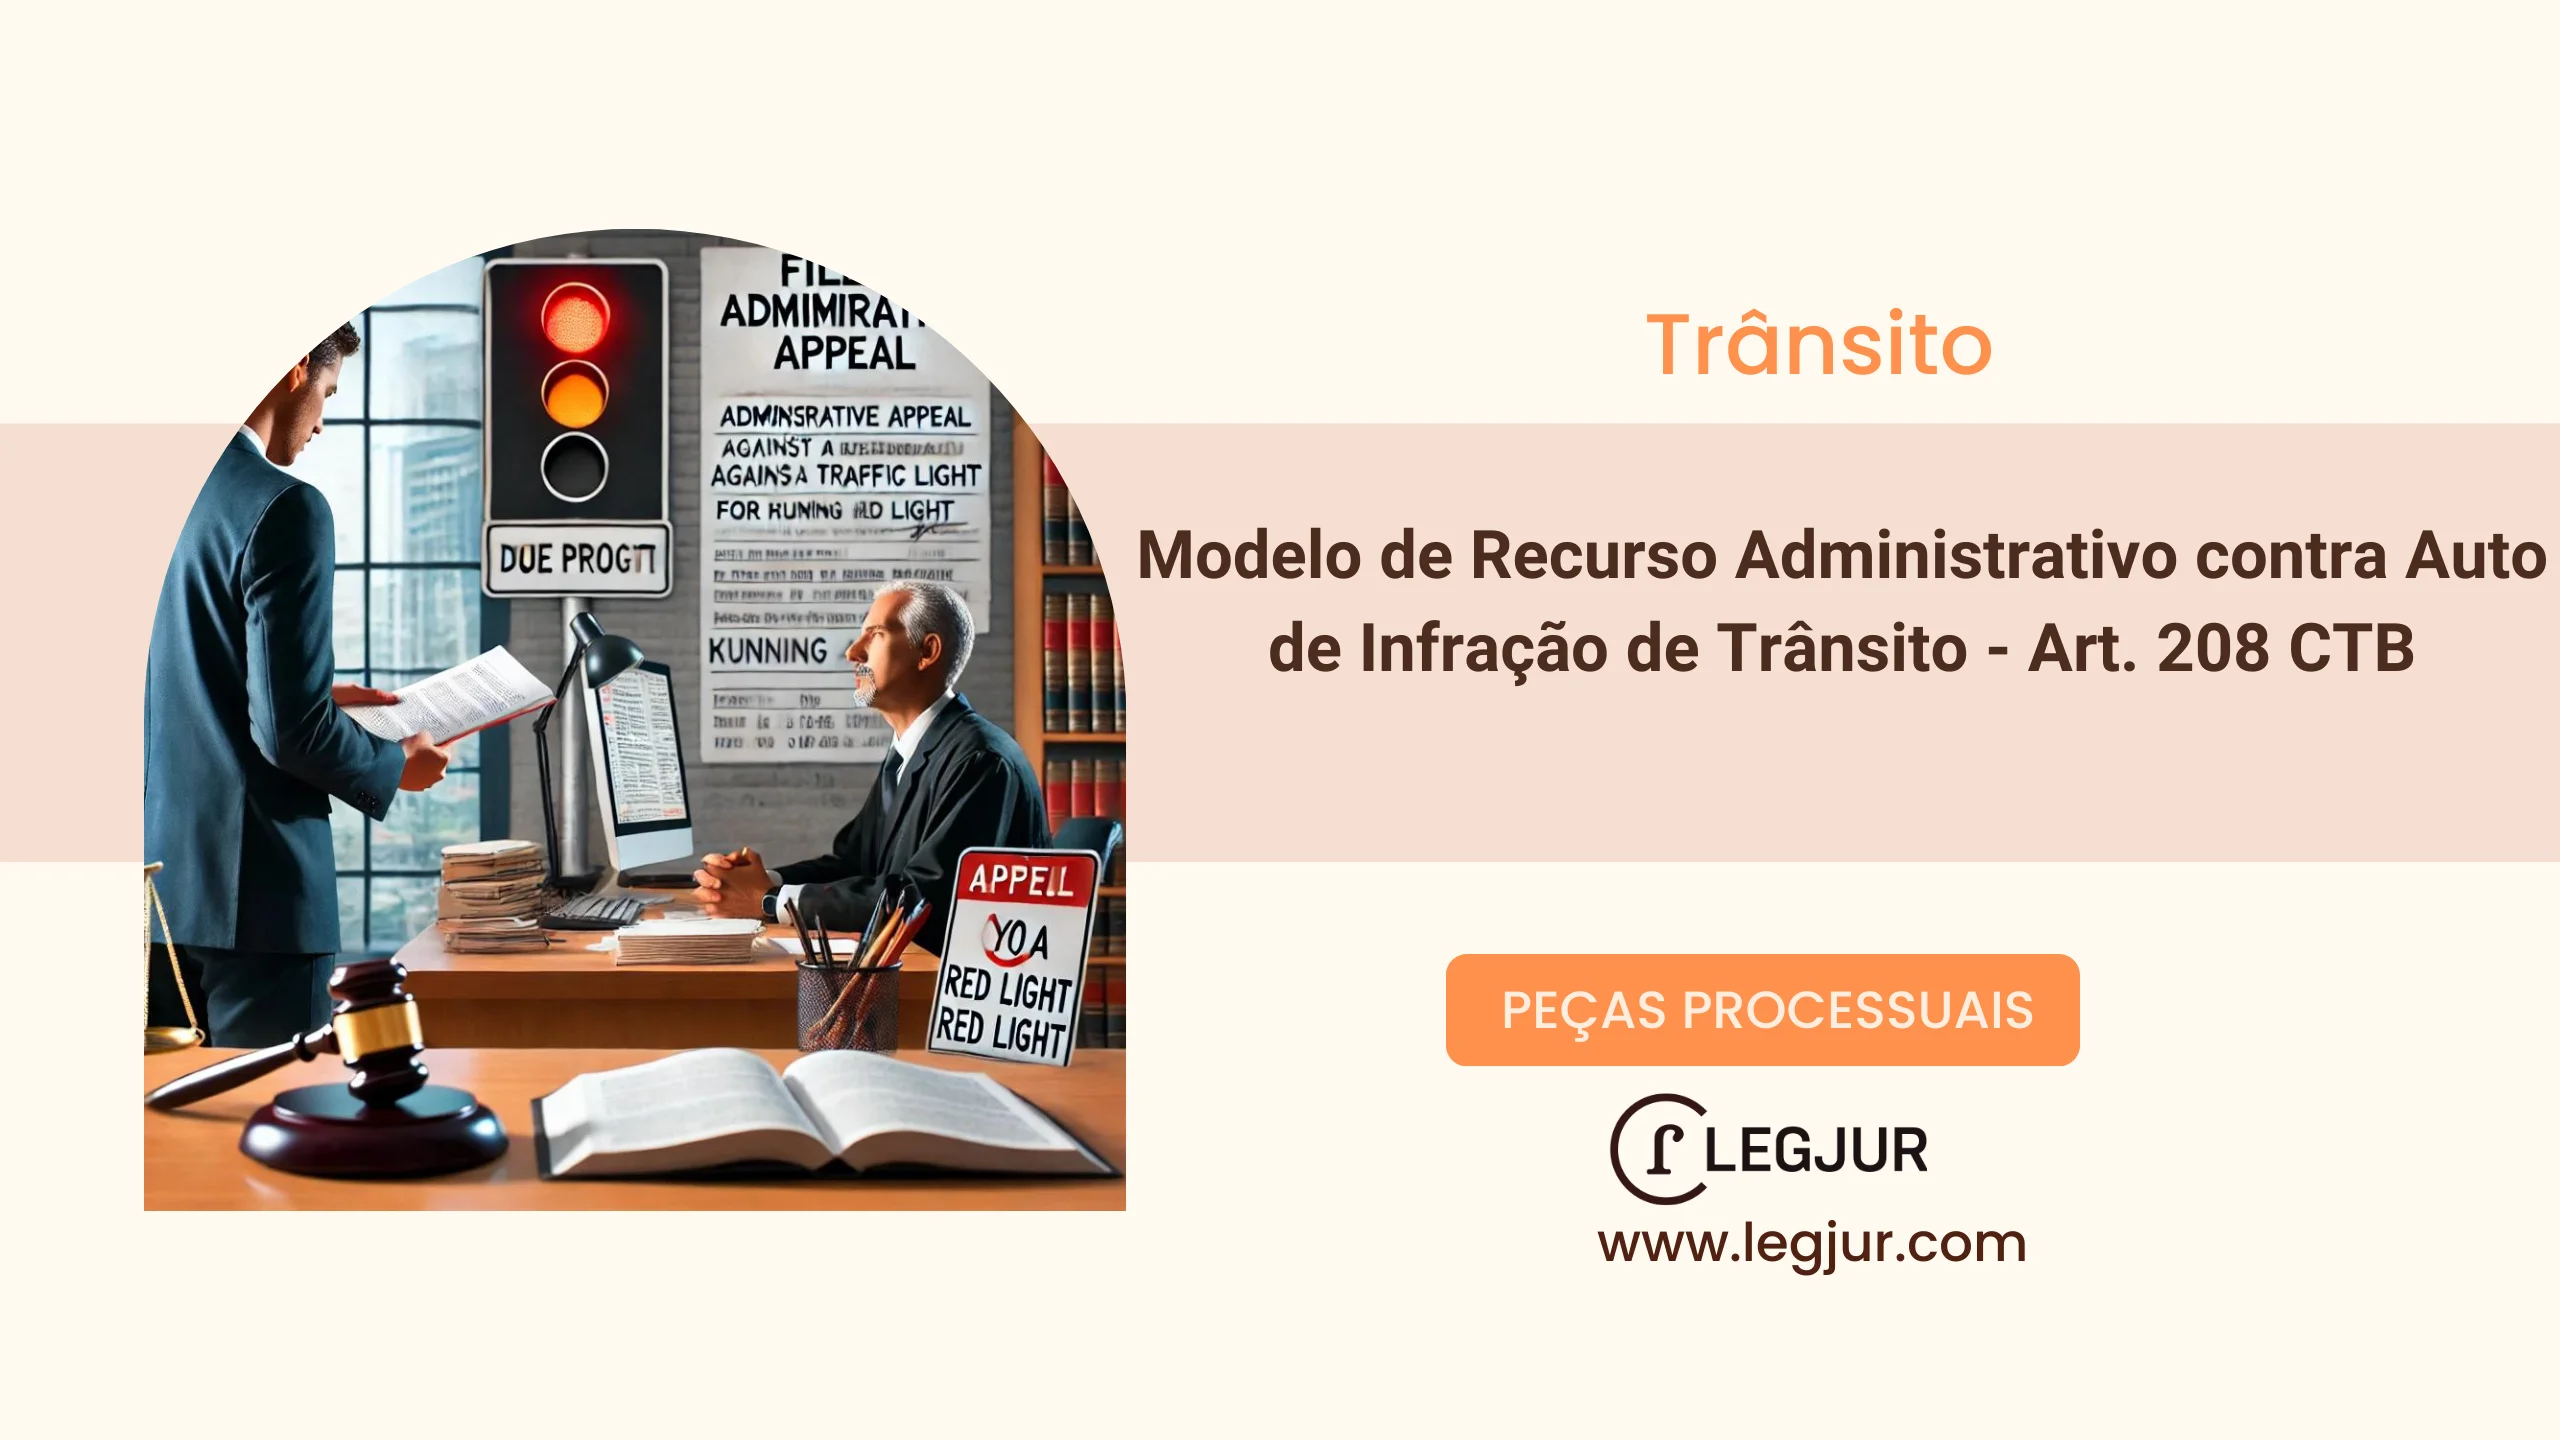 Modelo de Recurso Administrativo contra Auto de Infração de Trânsito - Art. 208 CTB